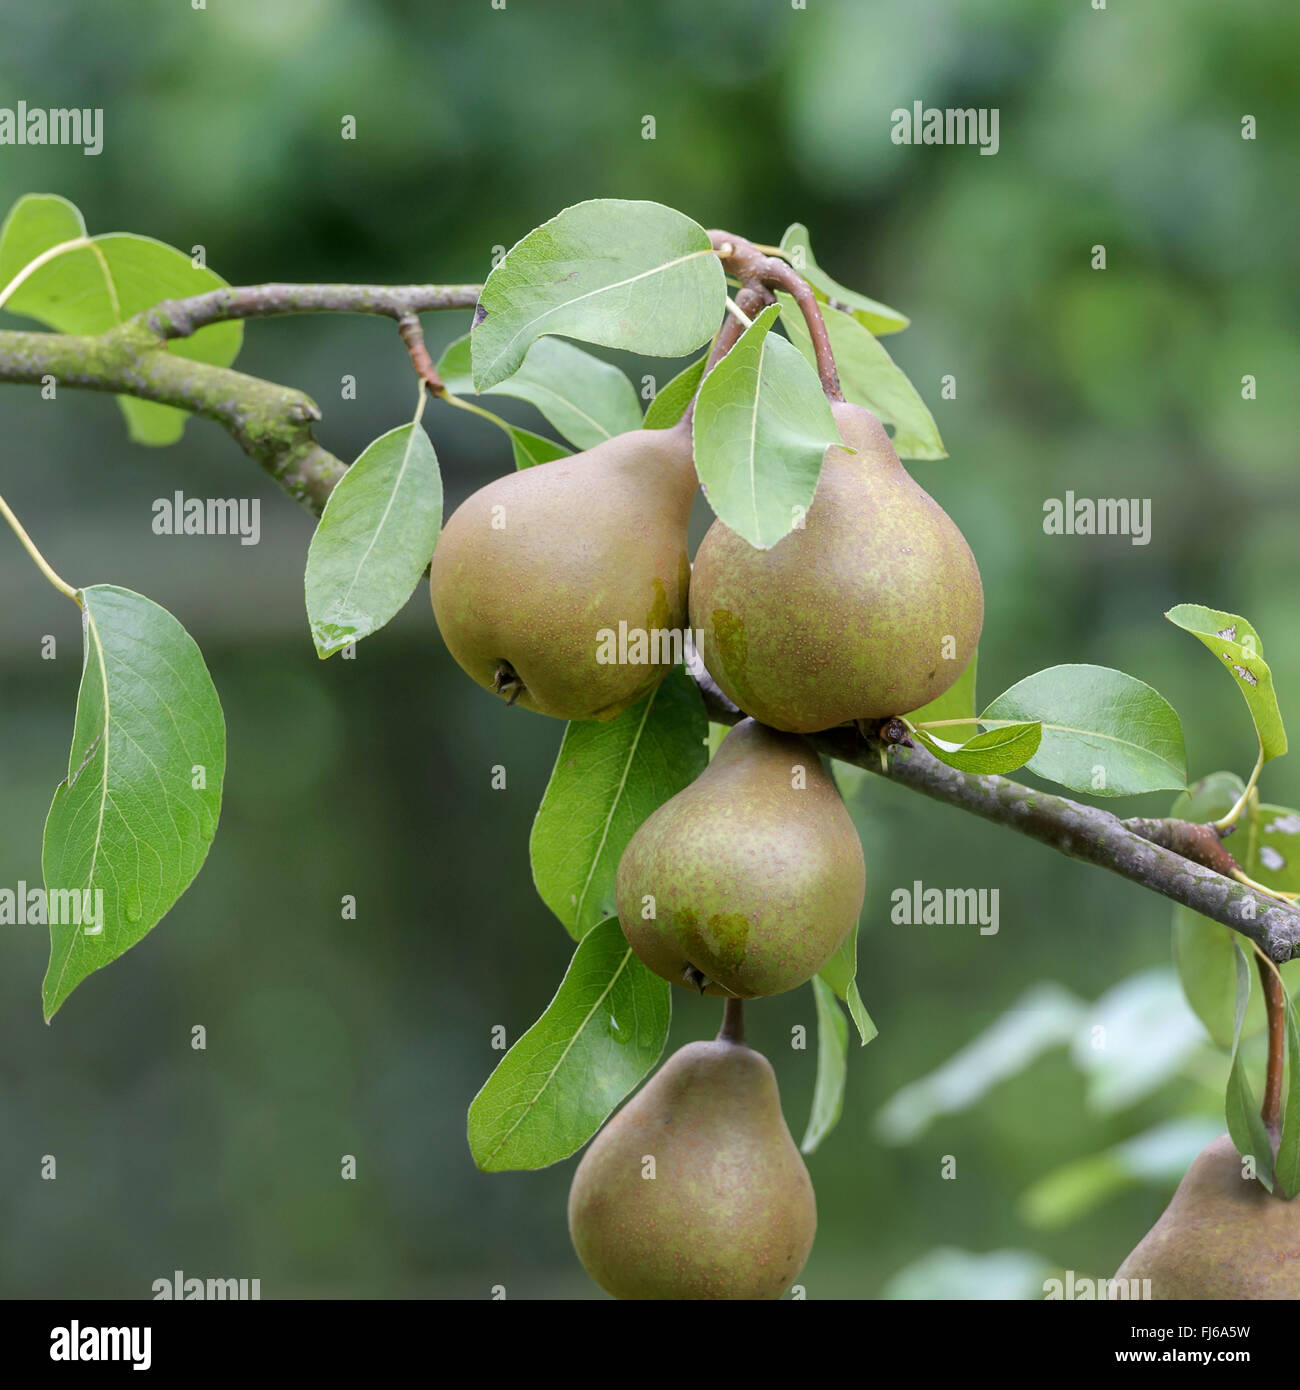 Poirier commun (Pyrus communis 'Uta', Pyrus communis Uta), peras sur un arbre, le cultivar Uta, Allemagne Banque D'Images